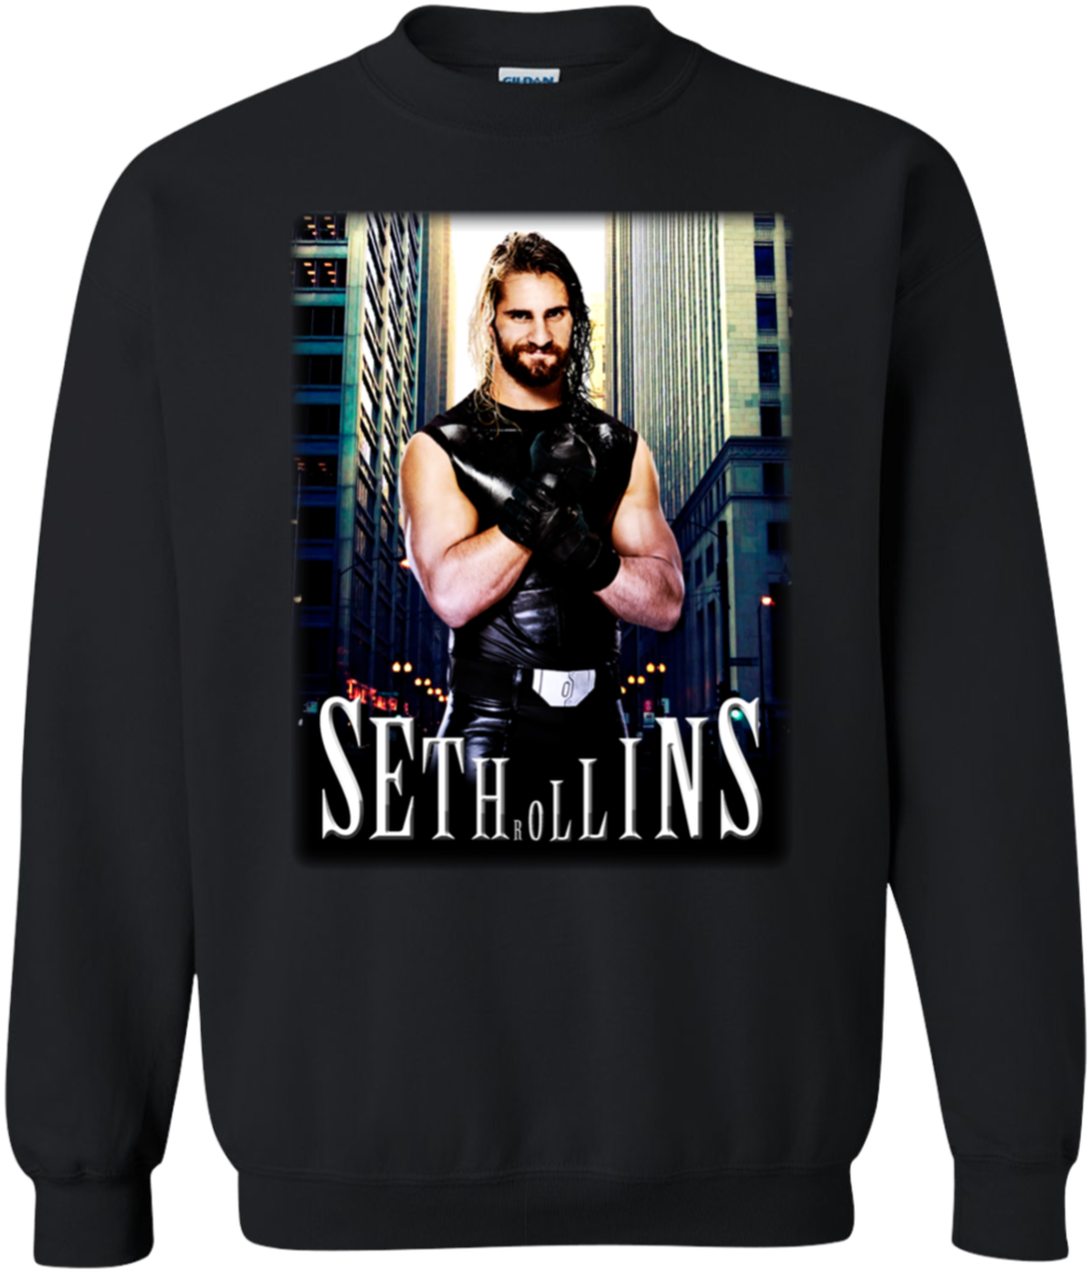 Seth Rollins Sweatshirt Design PNG image